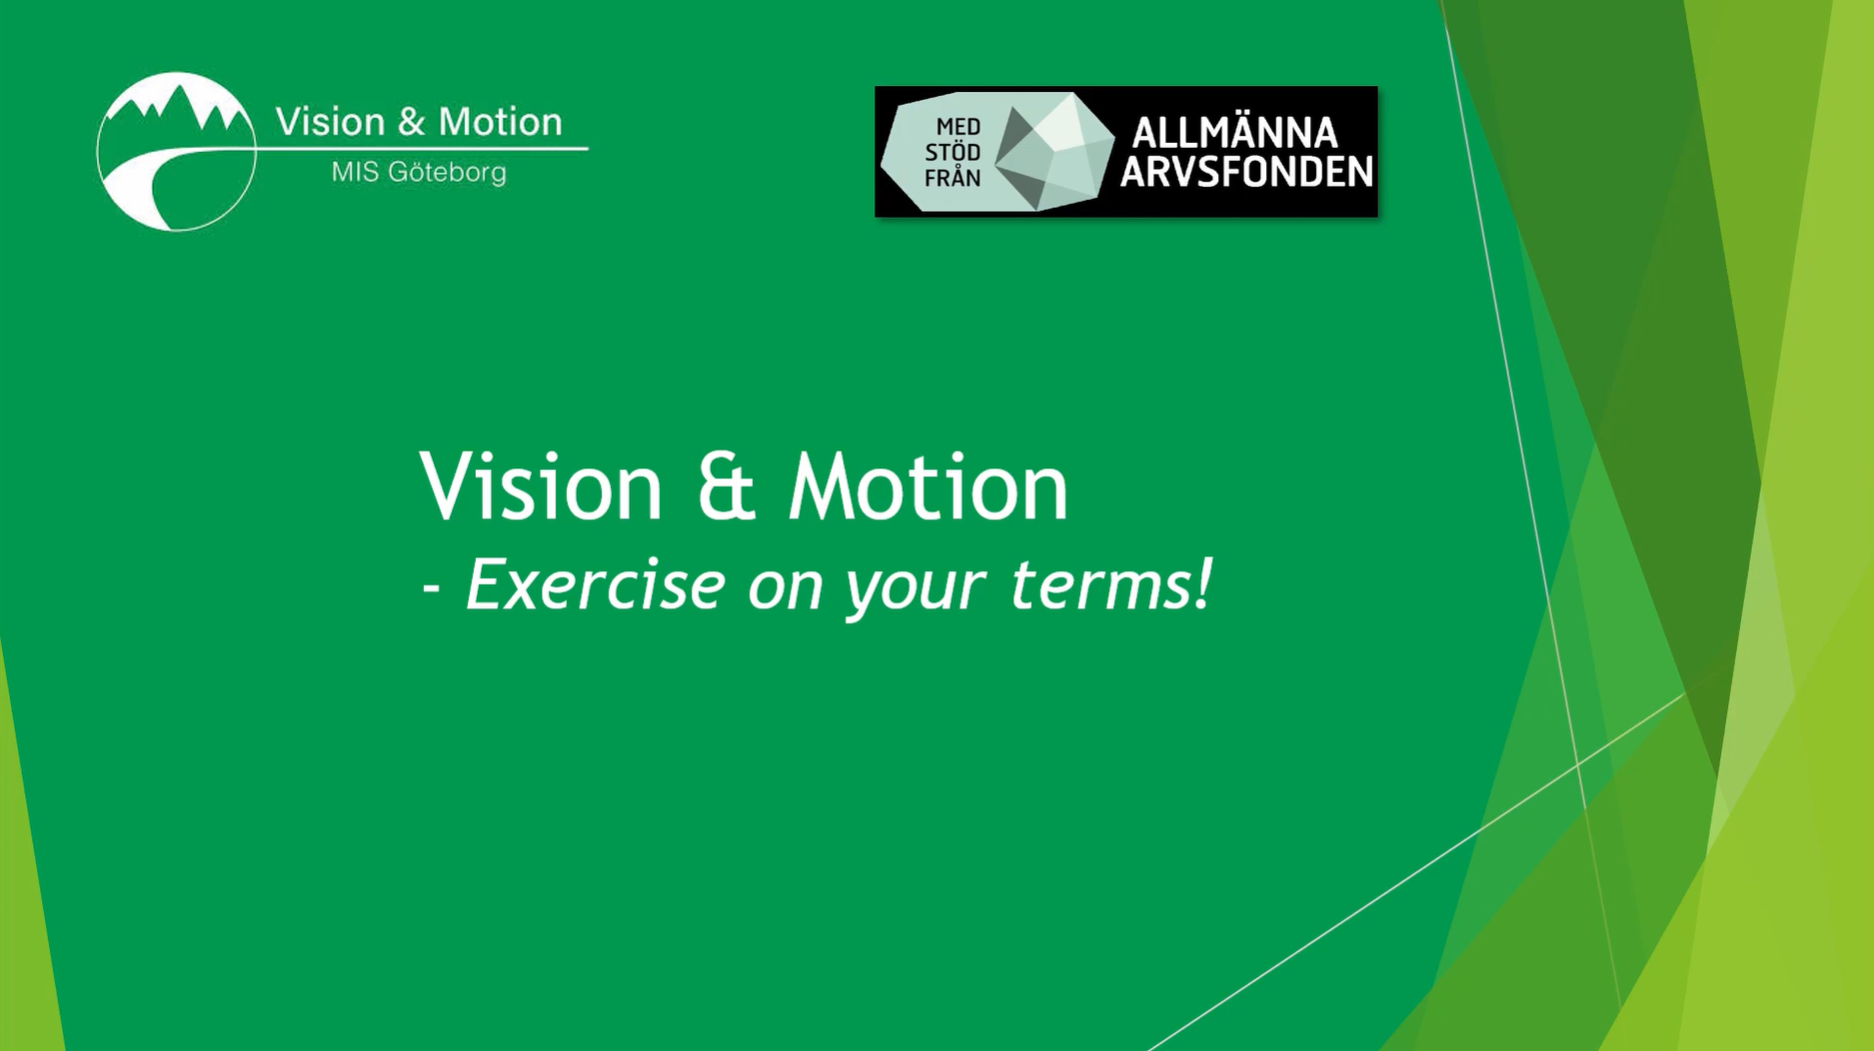 Vision & Motion - motionera på dina villkor.